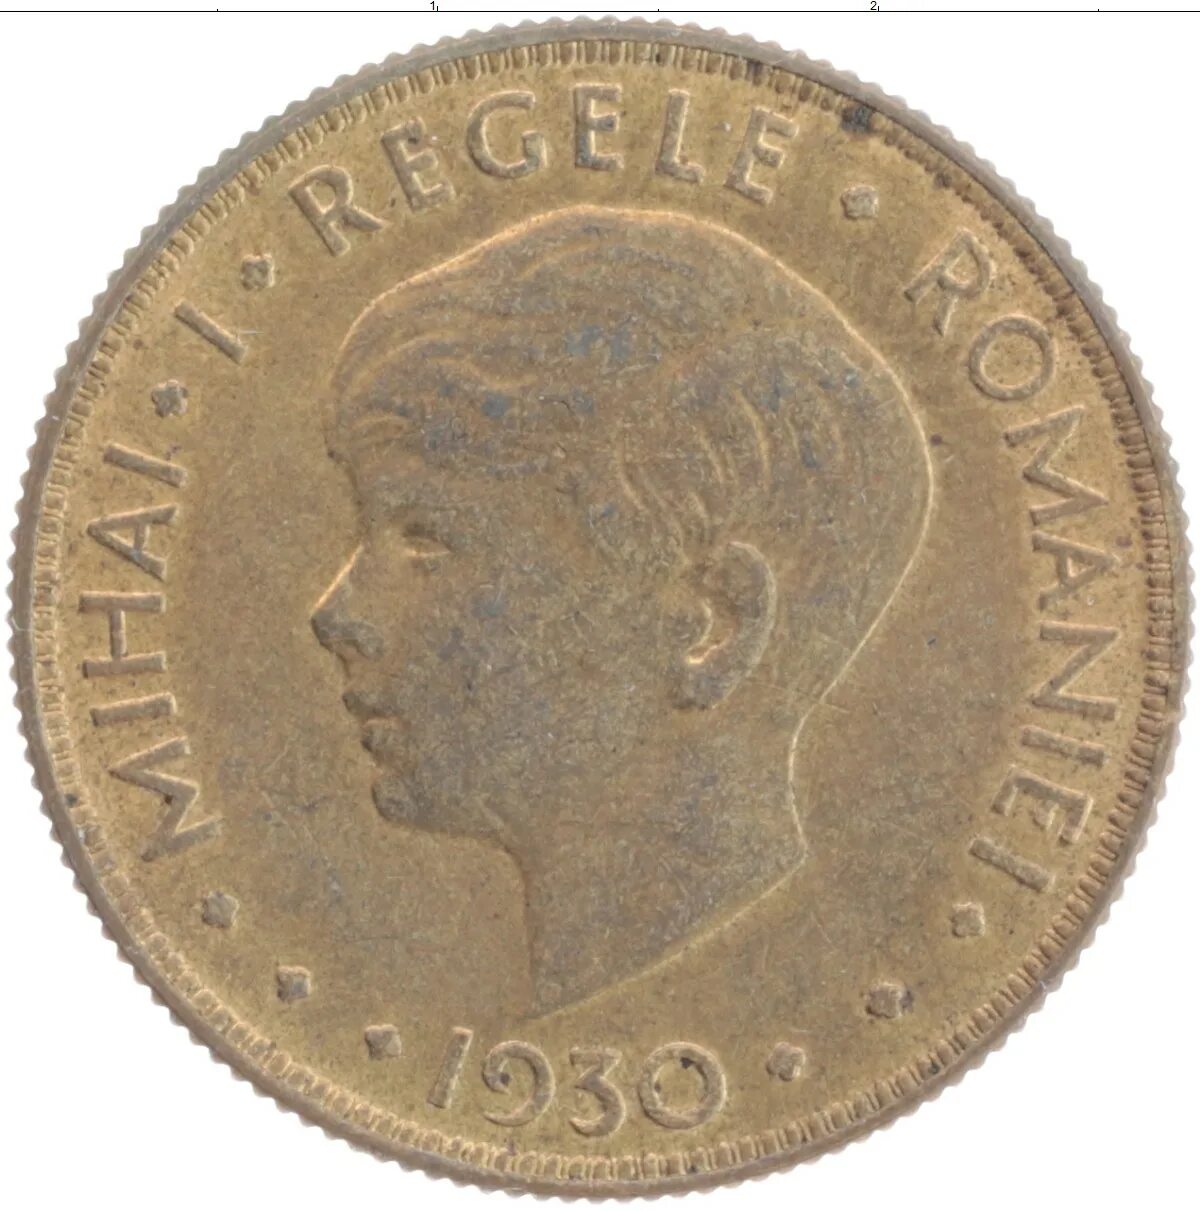 20 лей в рублях. Румыния 20 лей 1930. Румынские Леи монеты. 20 Румынских лей. Румынские монеты второй мировой войны 20 лей 1930.